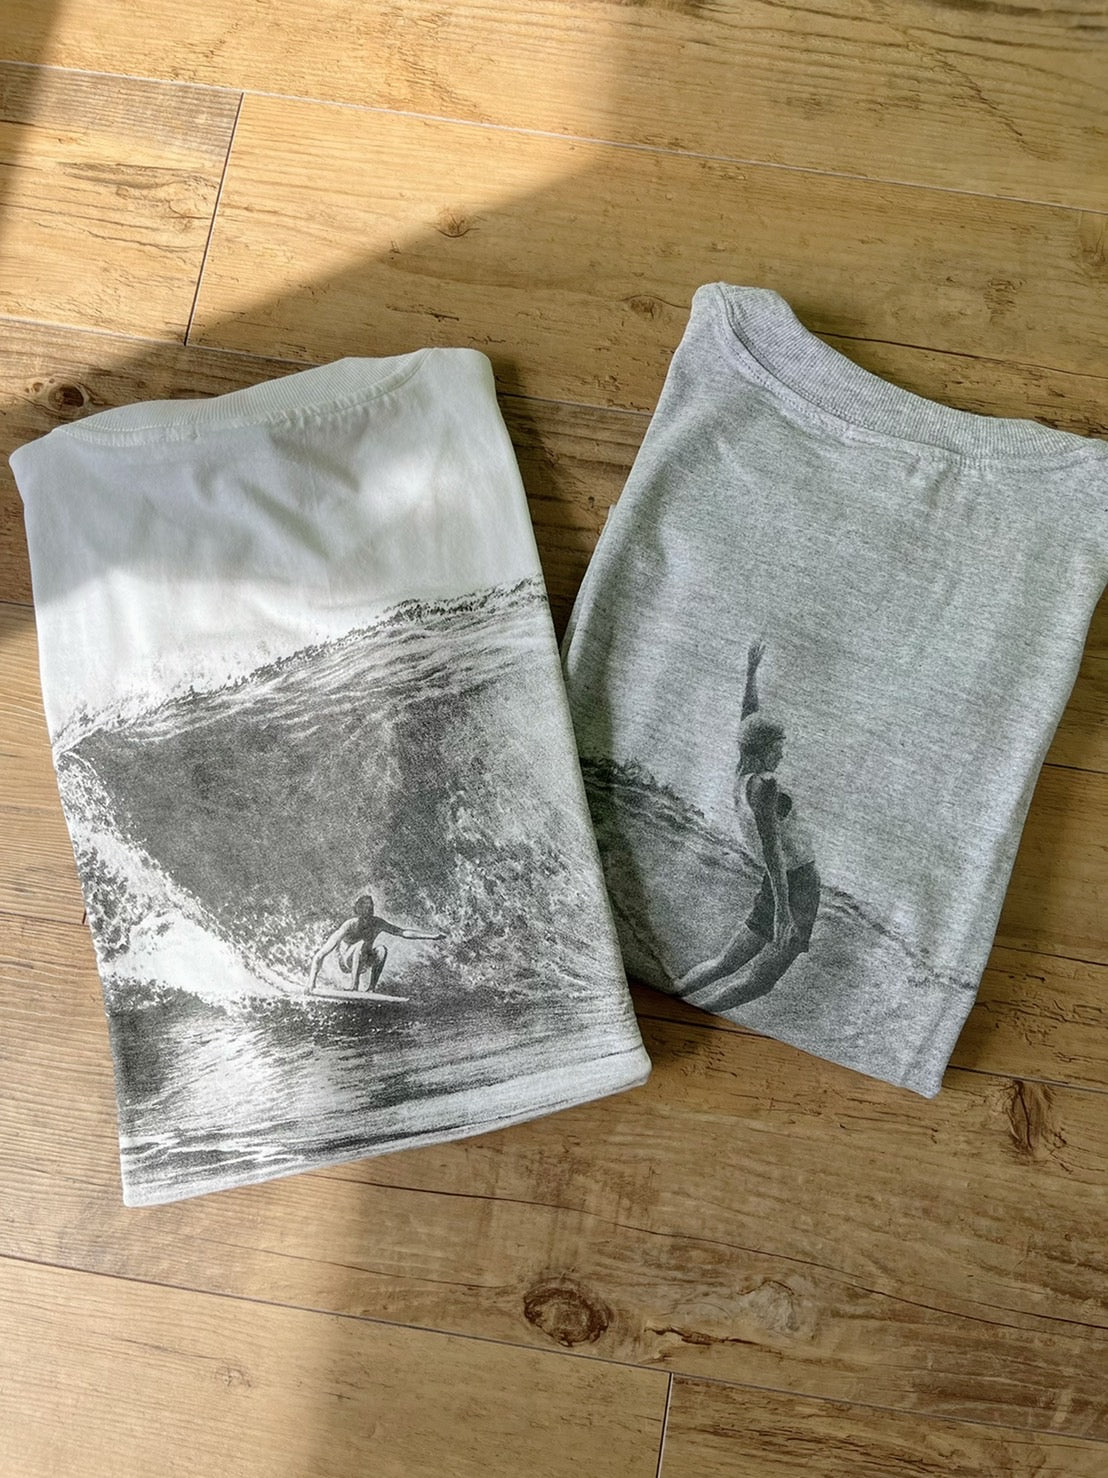 【Solitude】00's Y2K surf the waterman series John Peck T-shirt （men's L) ※カードなし